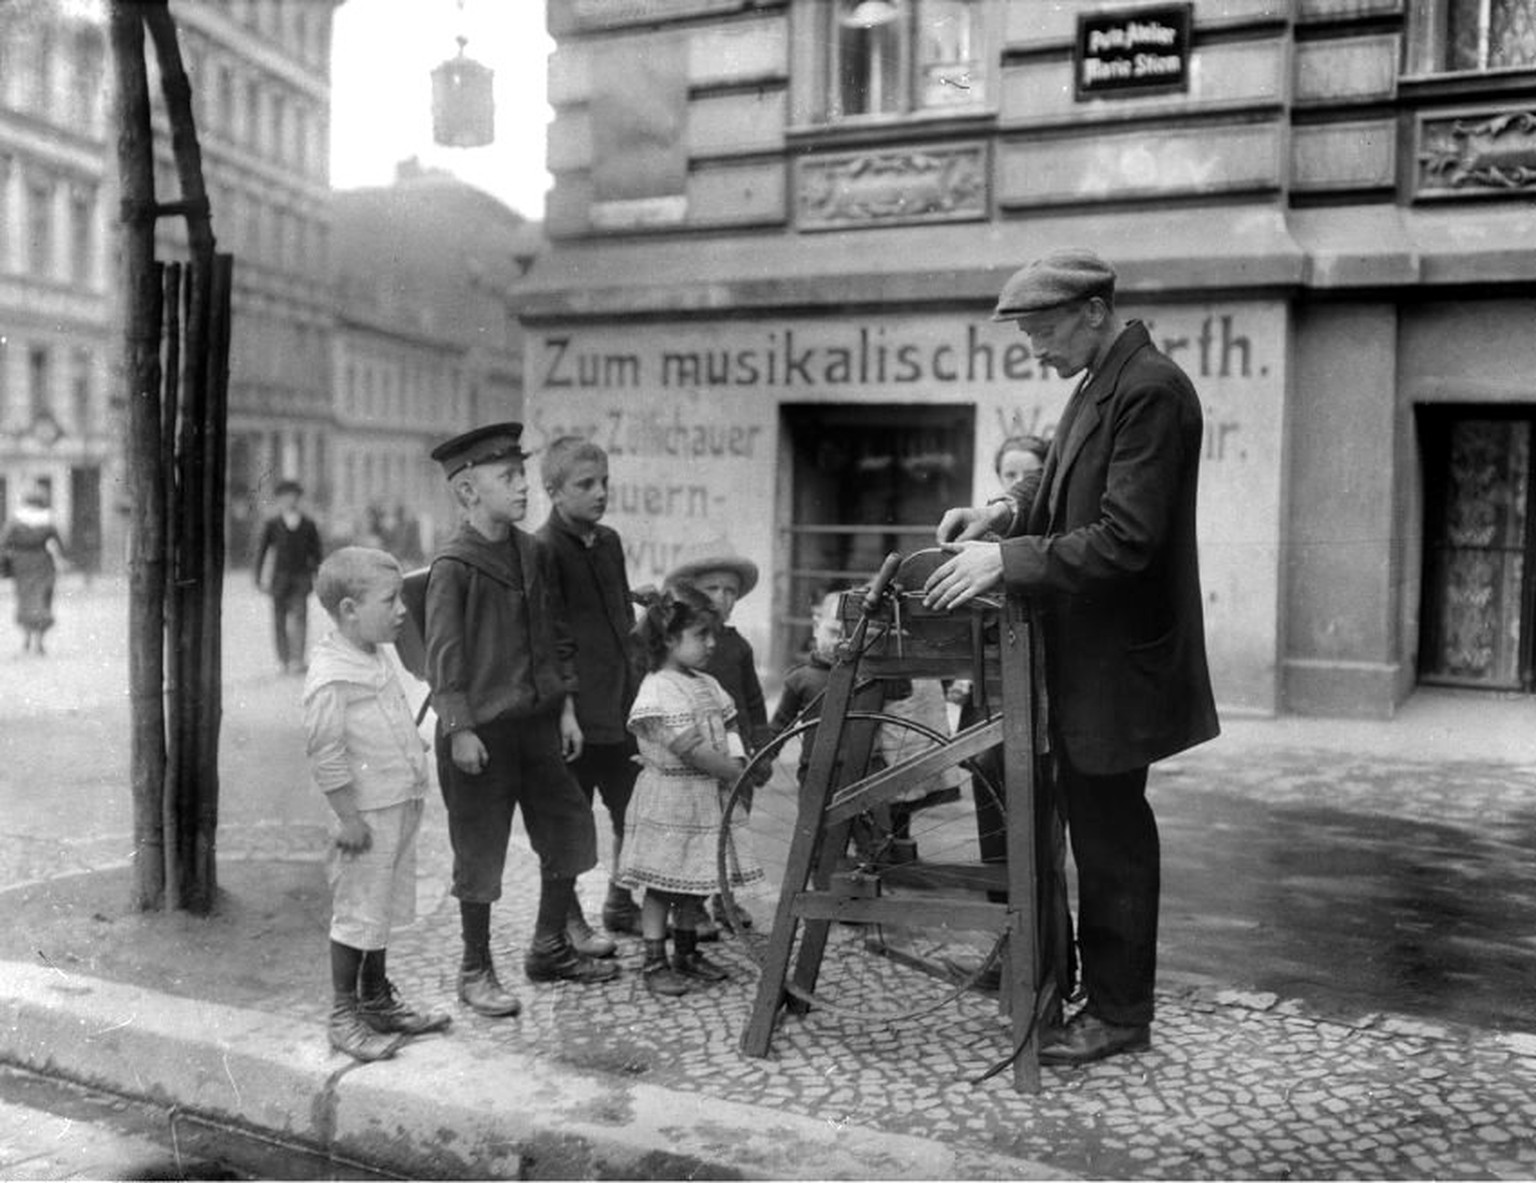 Ein Berliner Scherenschleifer, bewundert von Kindern, 1904.